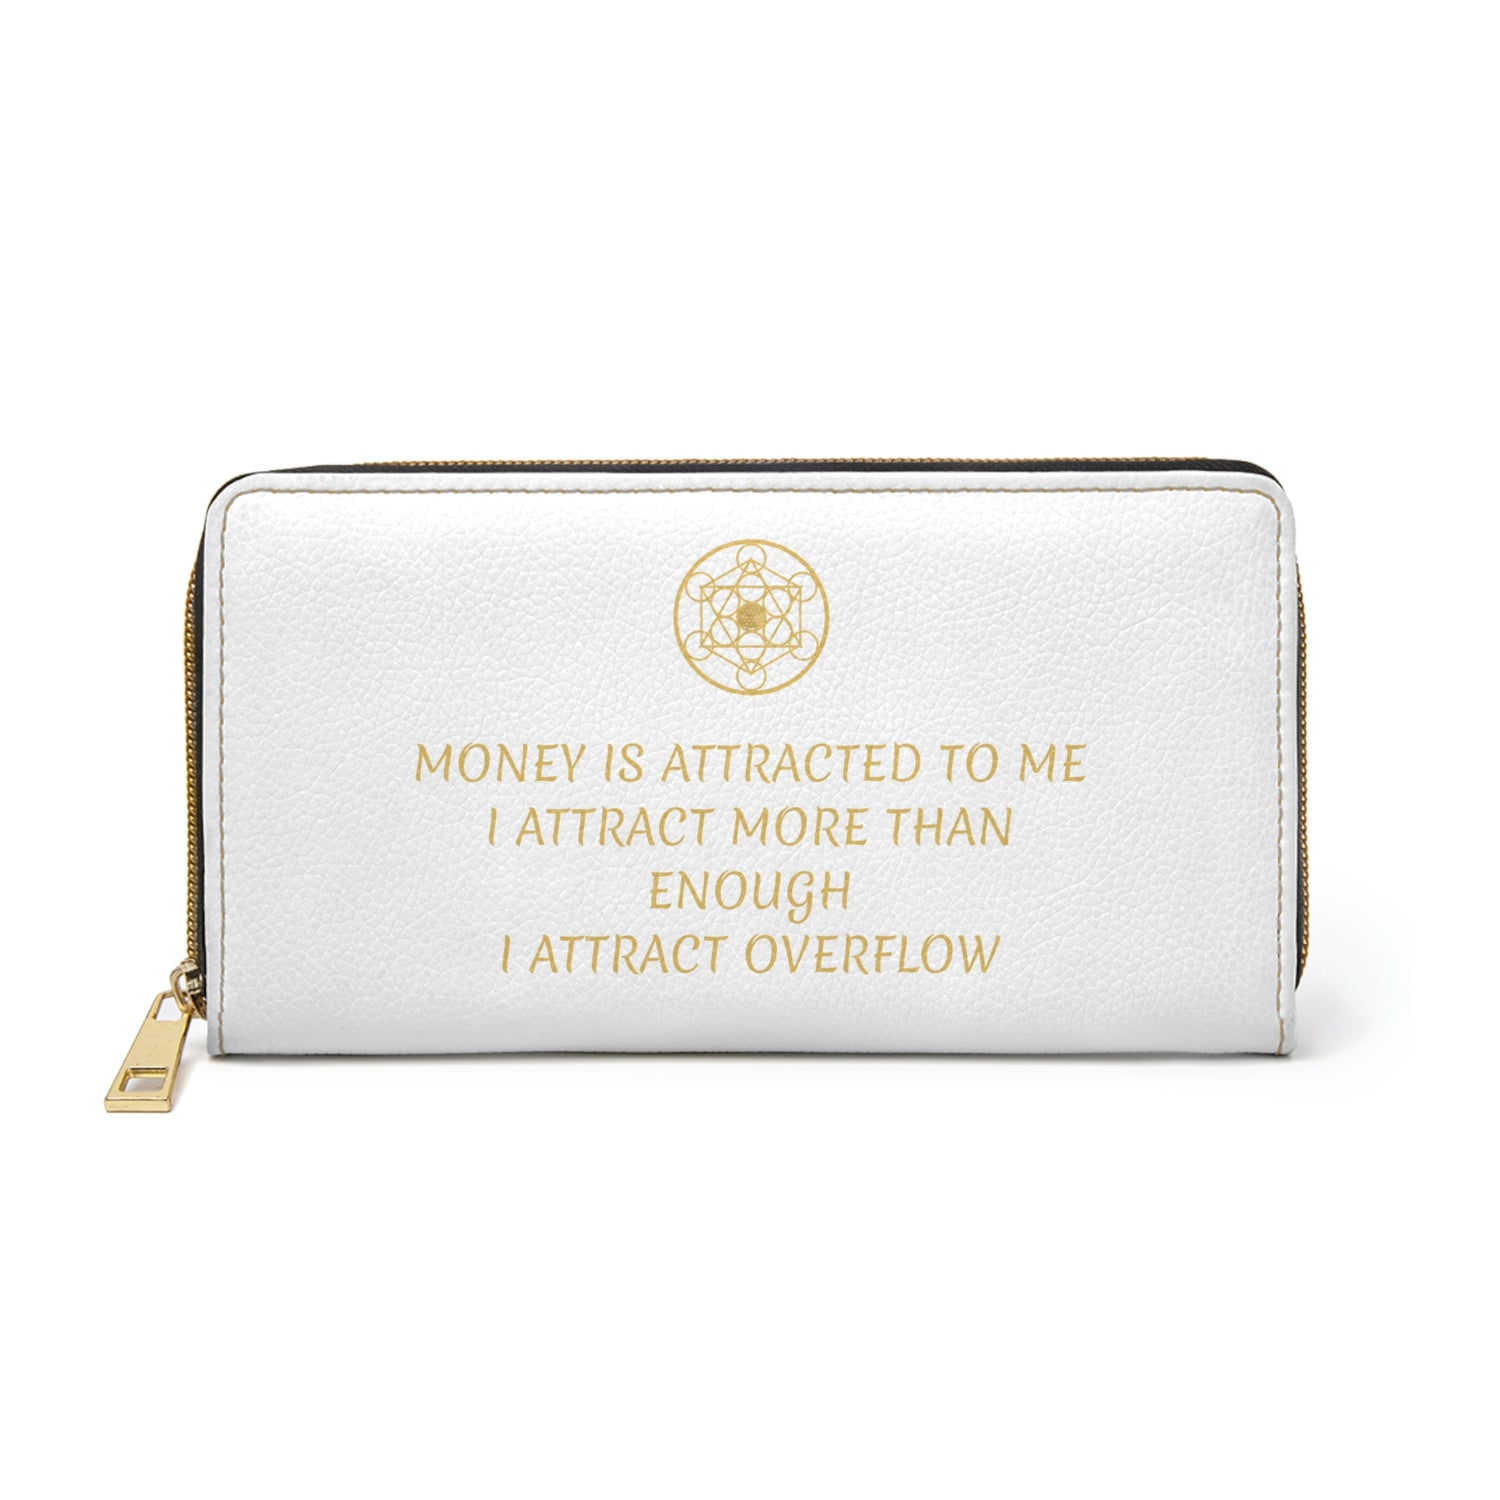 MONEY IS ATTRACTED TO ME - Zipper Wallet